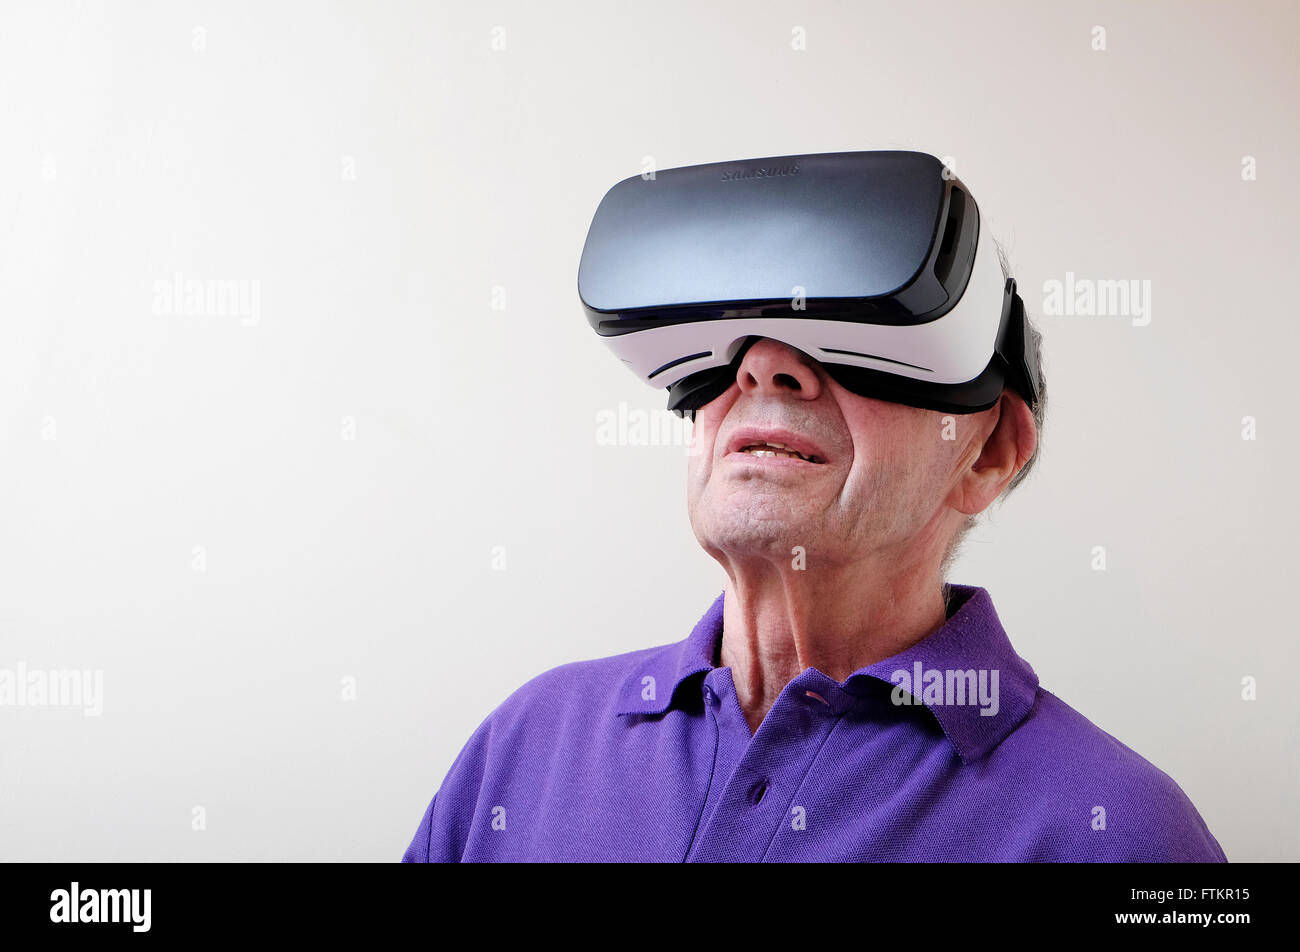 Casco de realidad virtual usado por el hombre senior Foto de stock